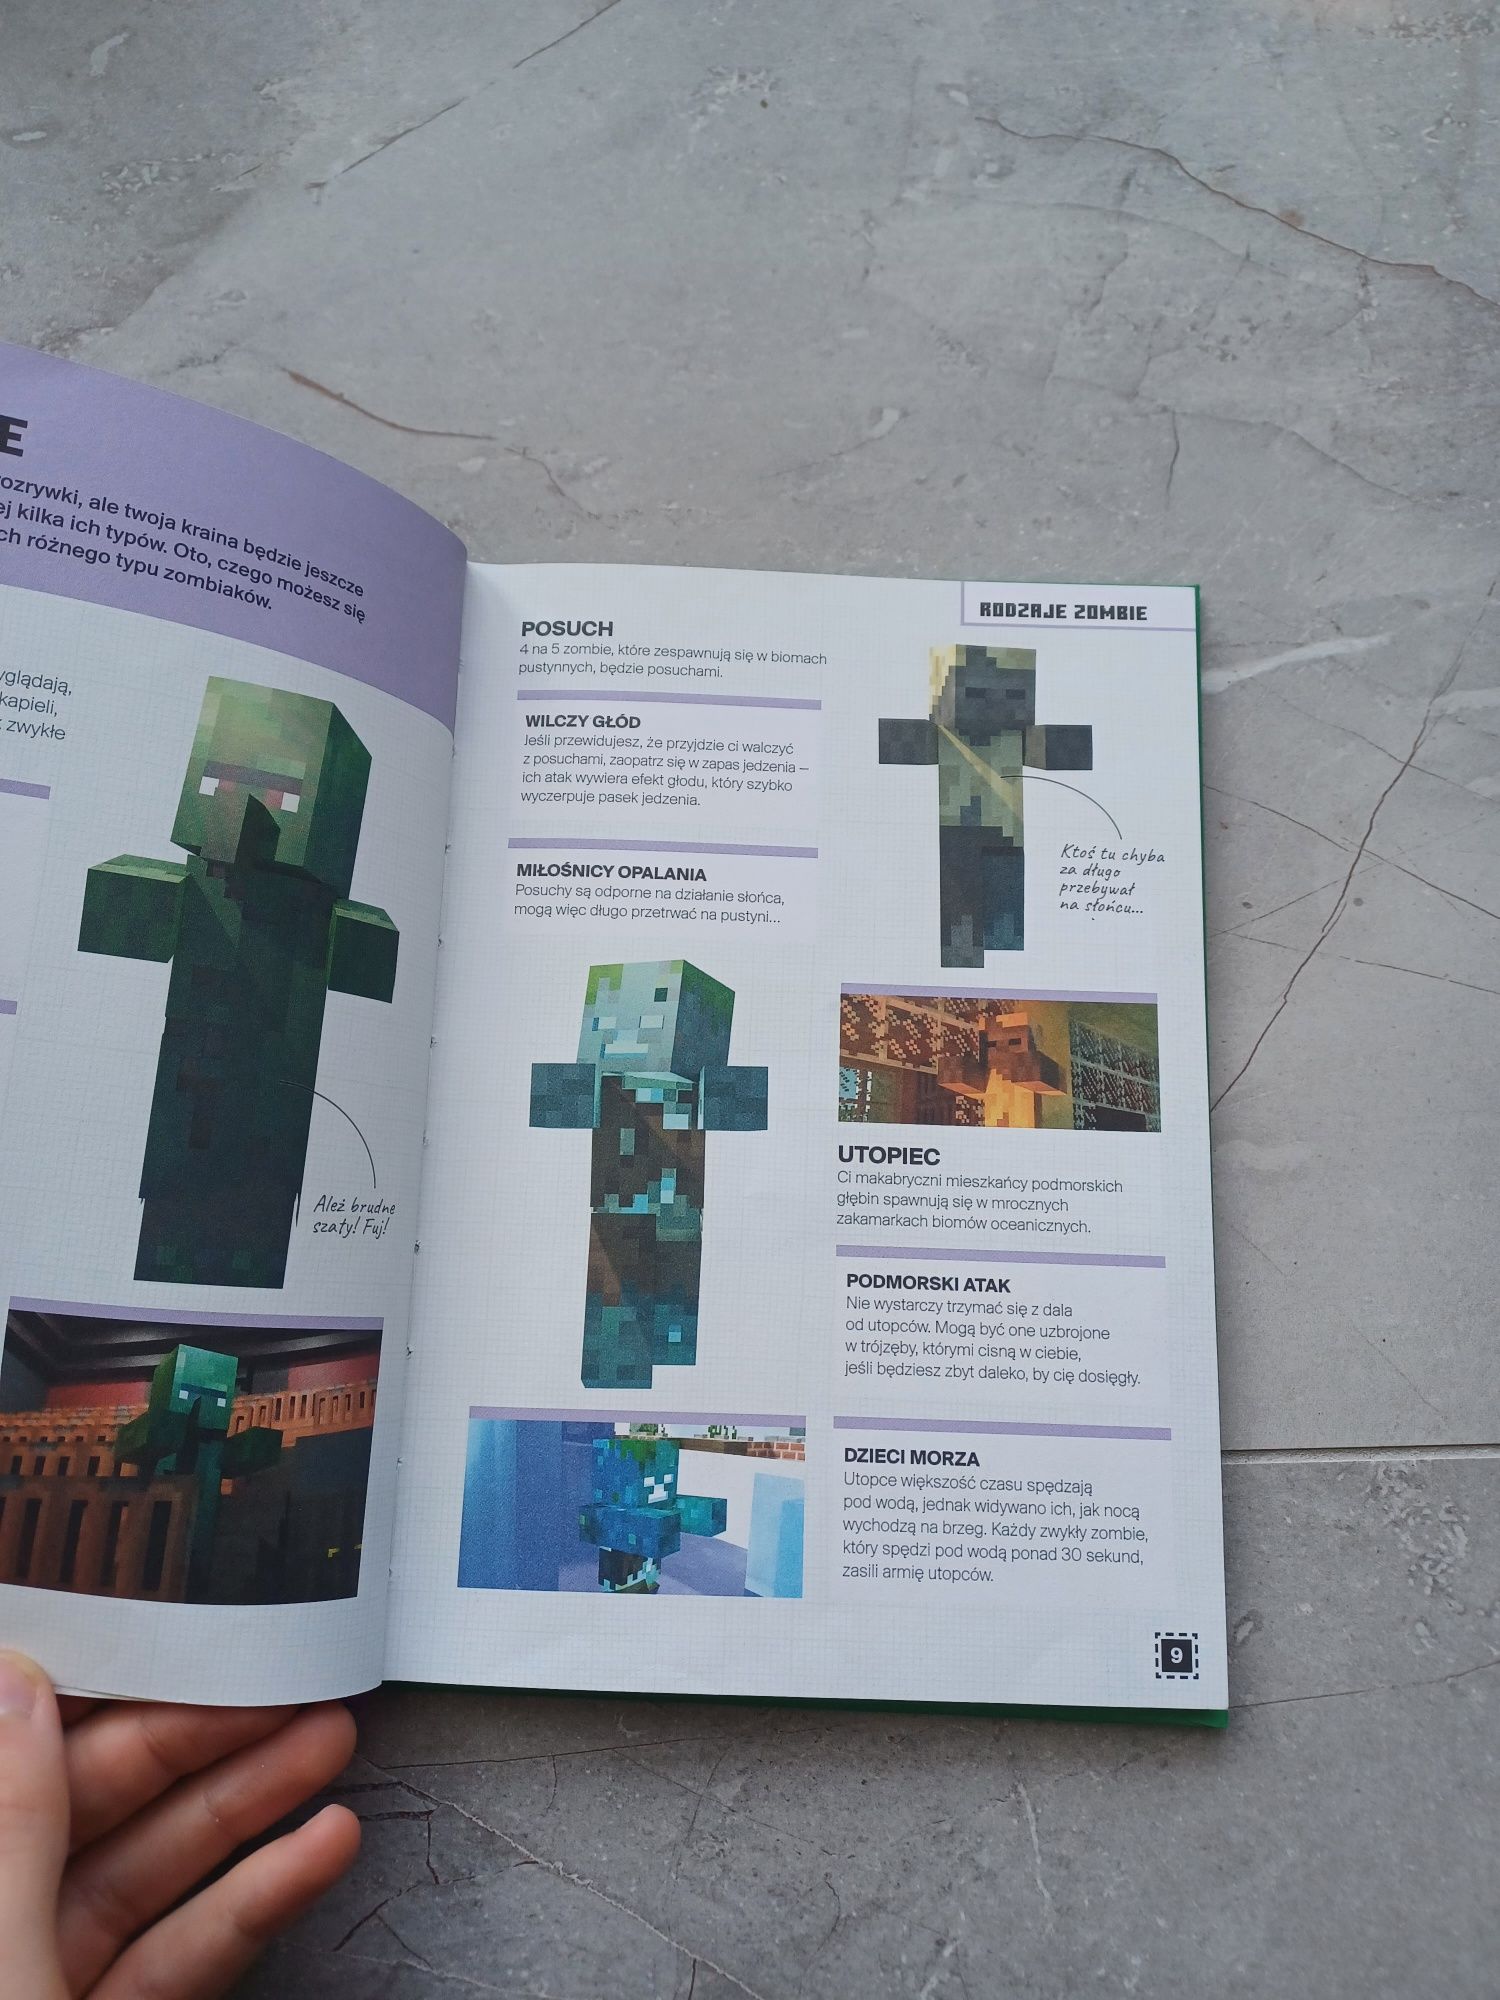 Książka Minecraft Zbuduj Zombieland Zombie